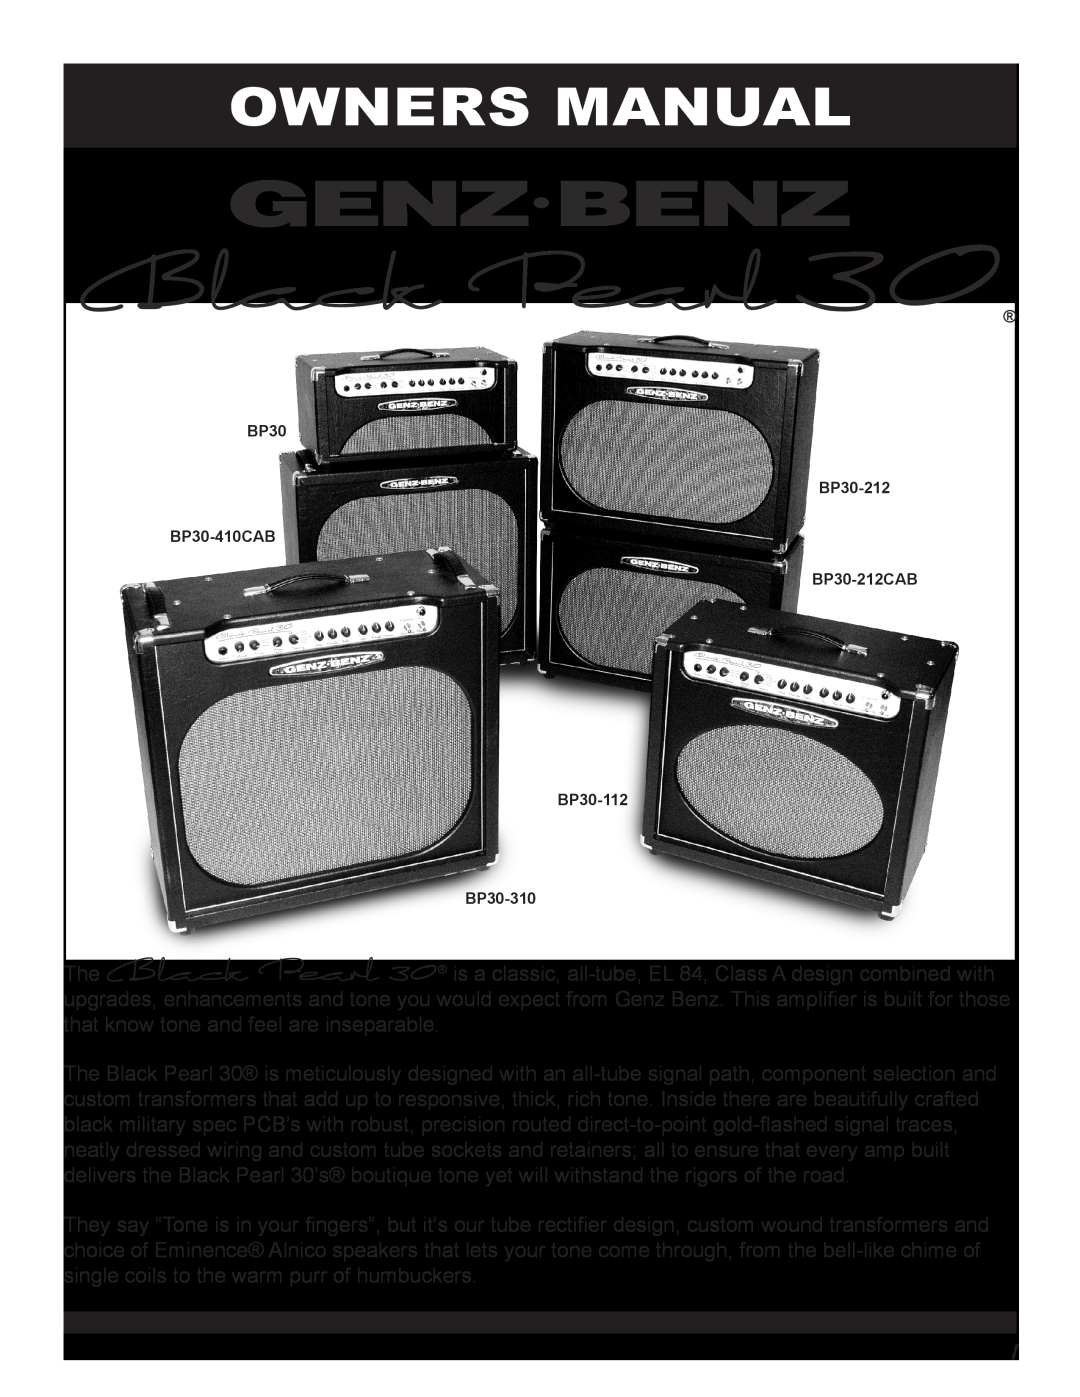 Genz-Benz owner manual Owners Manual, BP30 BP30-212 BP30-410CAB BP30-212CAB BP30-112 BP30-310 